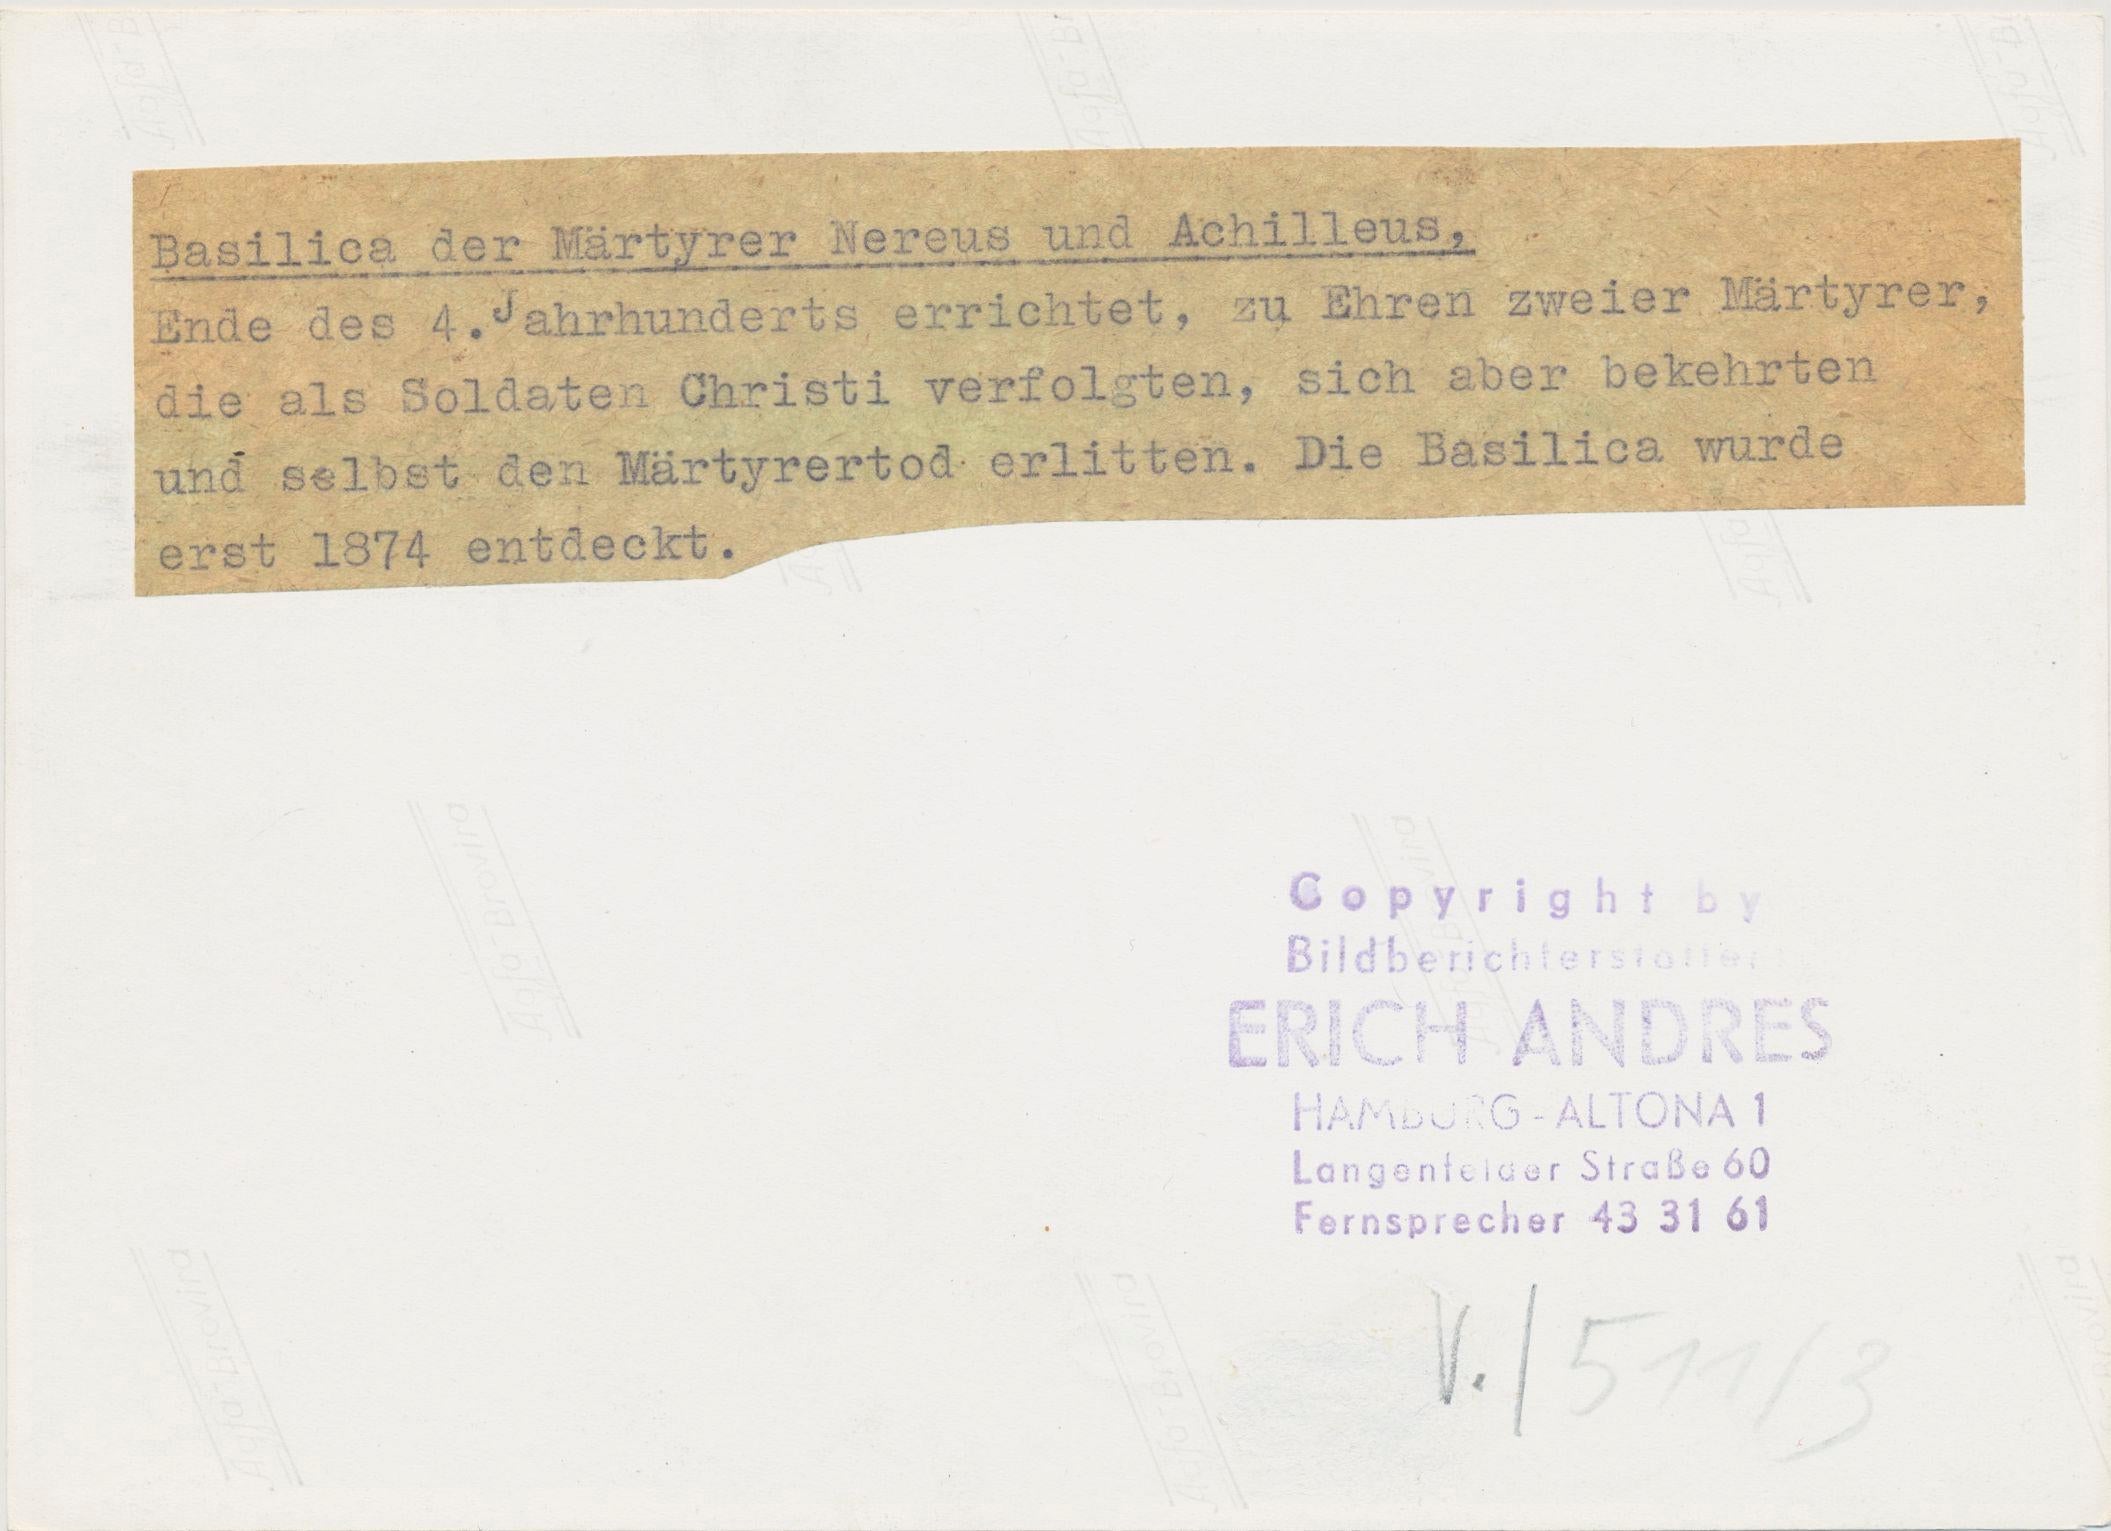 Silbergelatine-Druck von Erich Andres, um 1950.
Andres wurde 1905 in Deutschland geboren und verstarb 1992. Er begann seine Karriere als Fotograf im Jahr 1920. Er war einer der ersten Fotografen, die eine Leica benutzten. Seine Bilder sind heute in